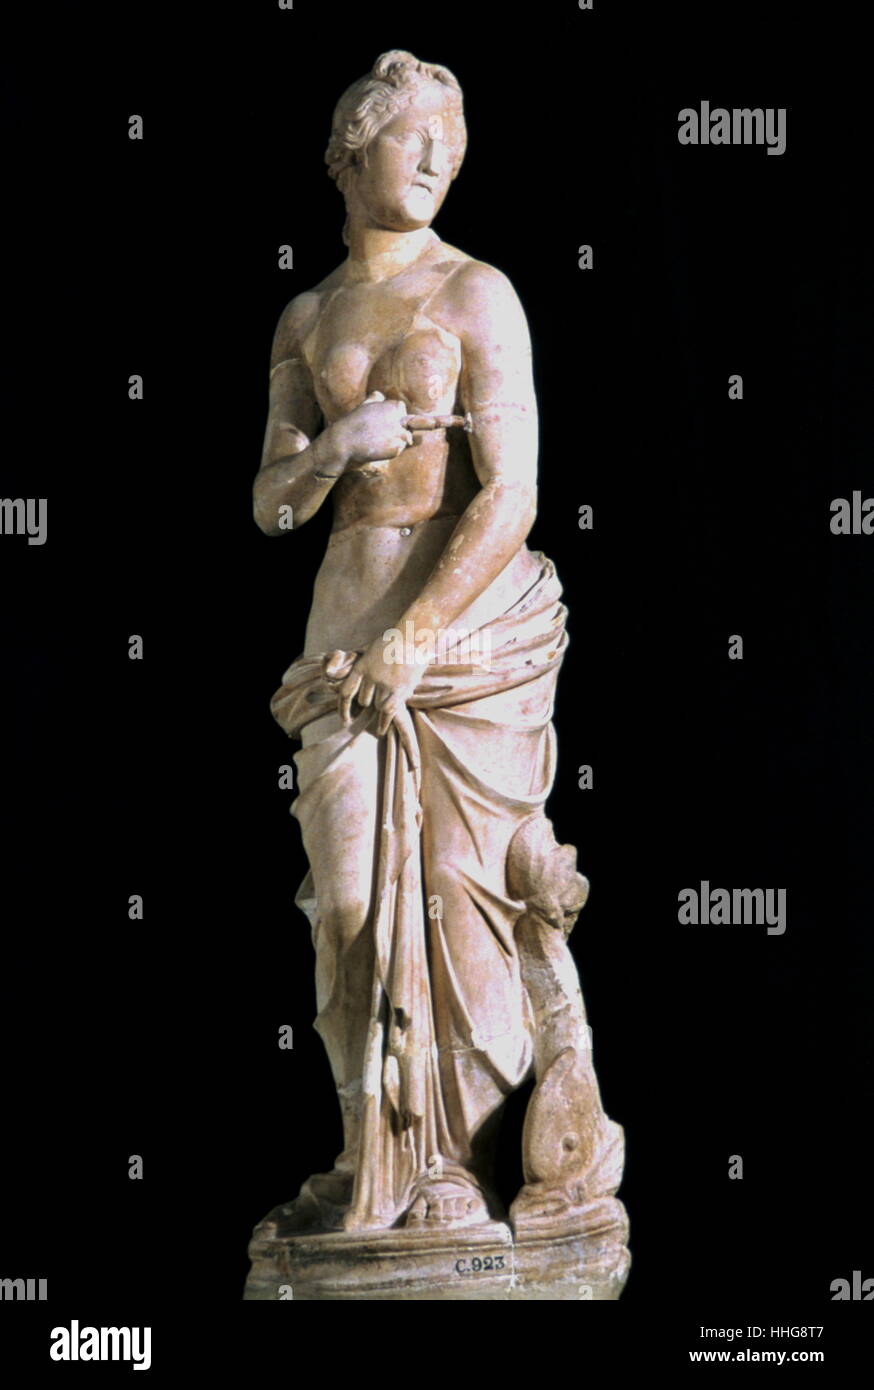 2do siglo estatua de Venus, la diosa romana del amor y de la belleza, que se muestra en el museo del Bardo en Túnez Foto de stock